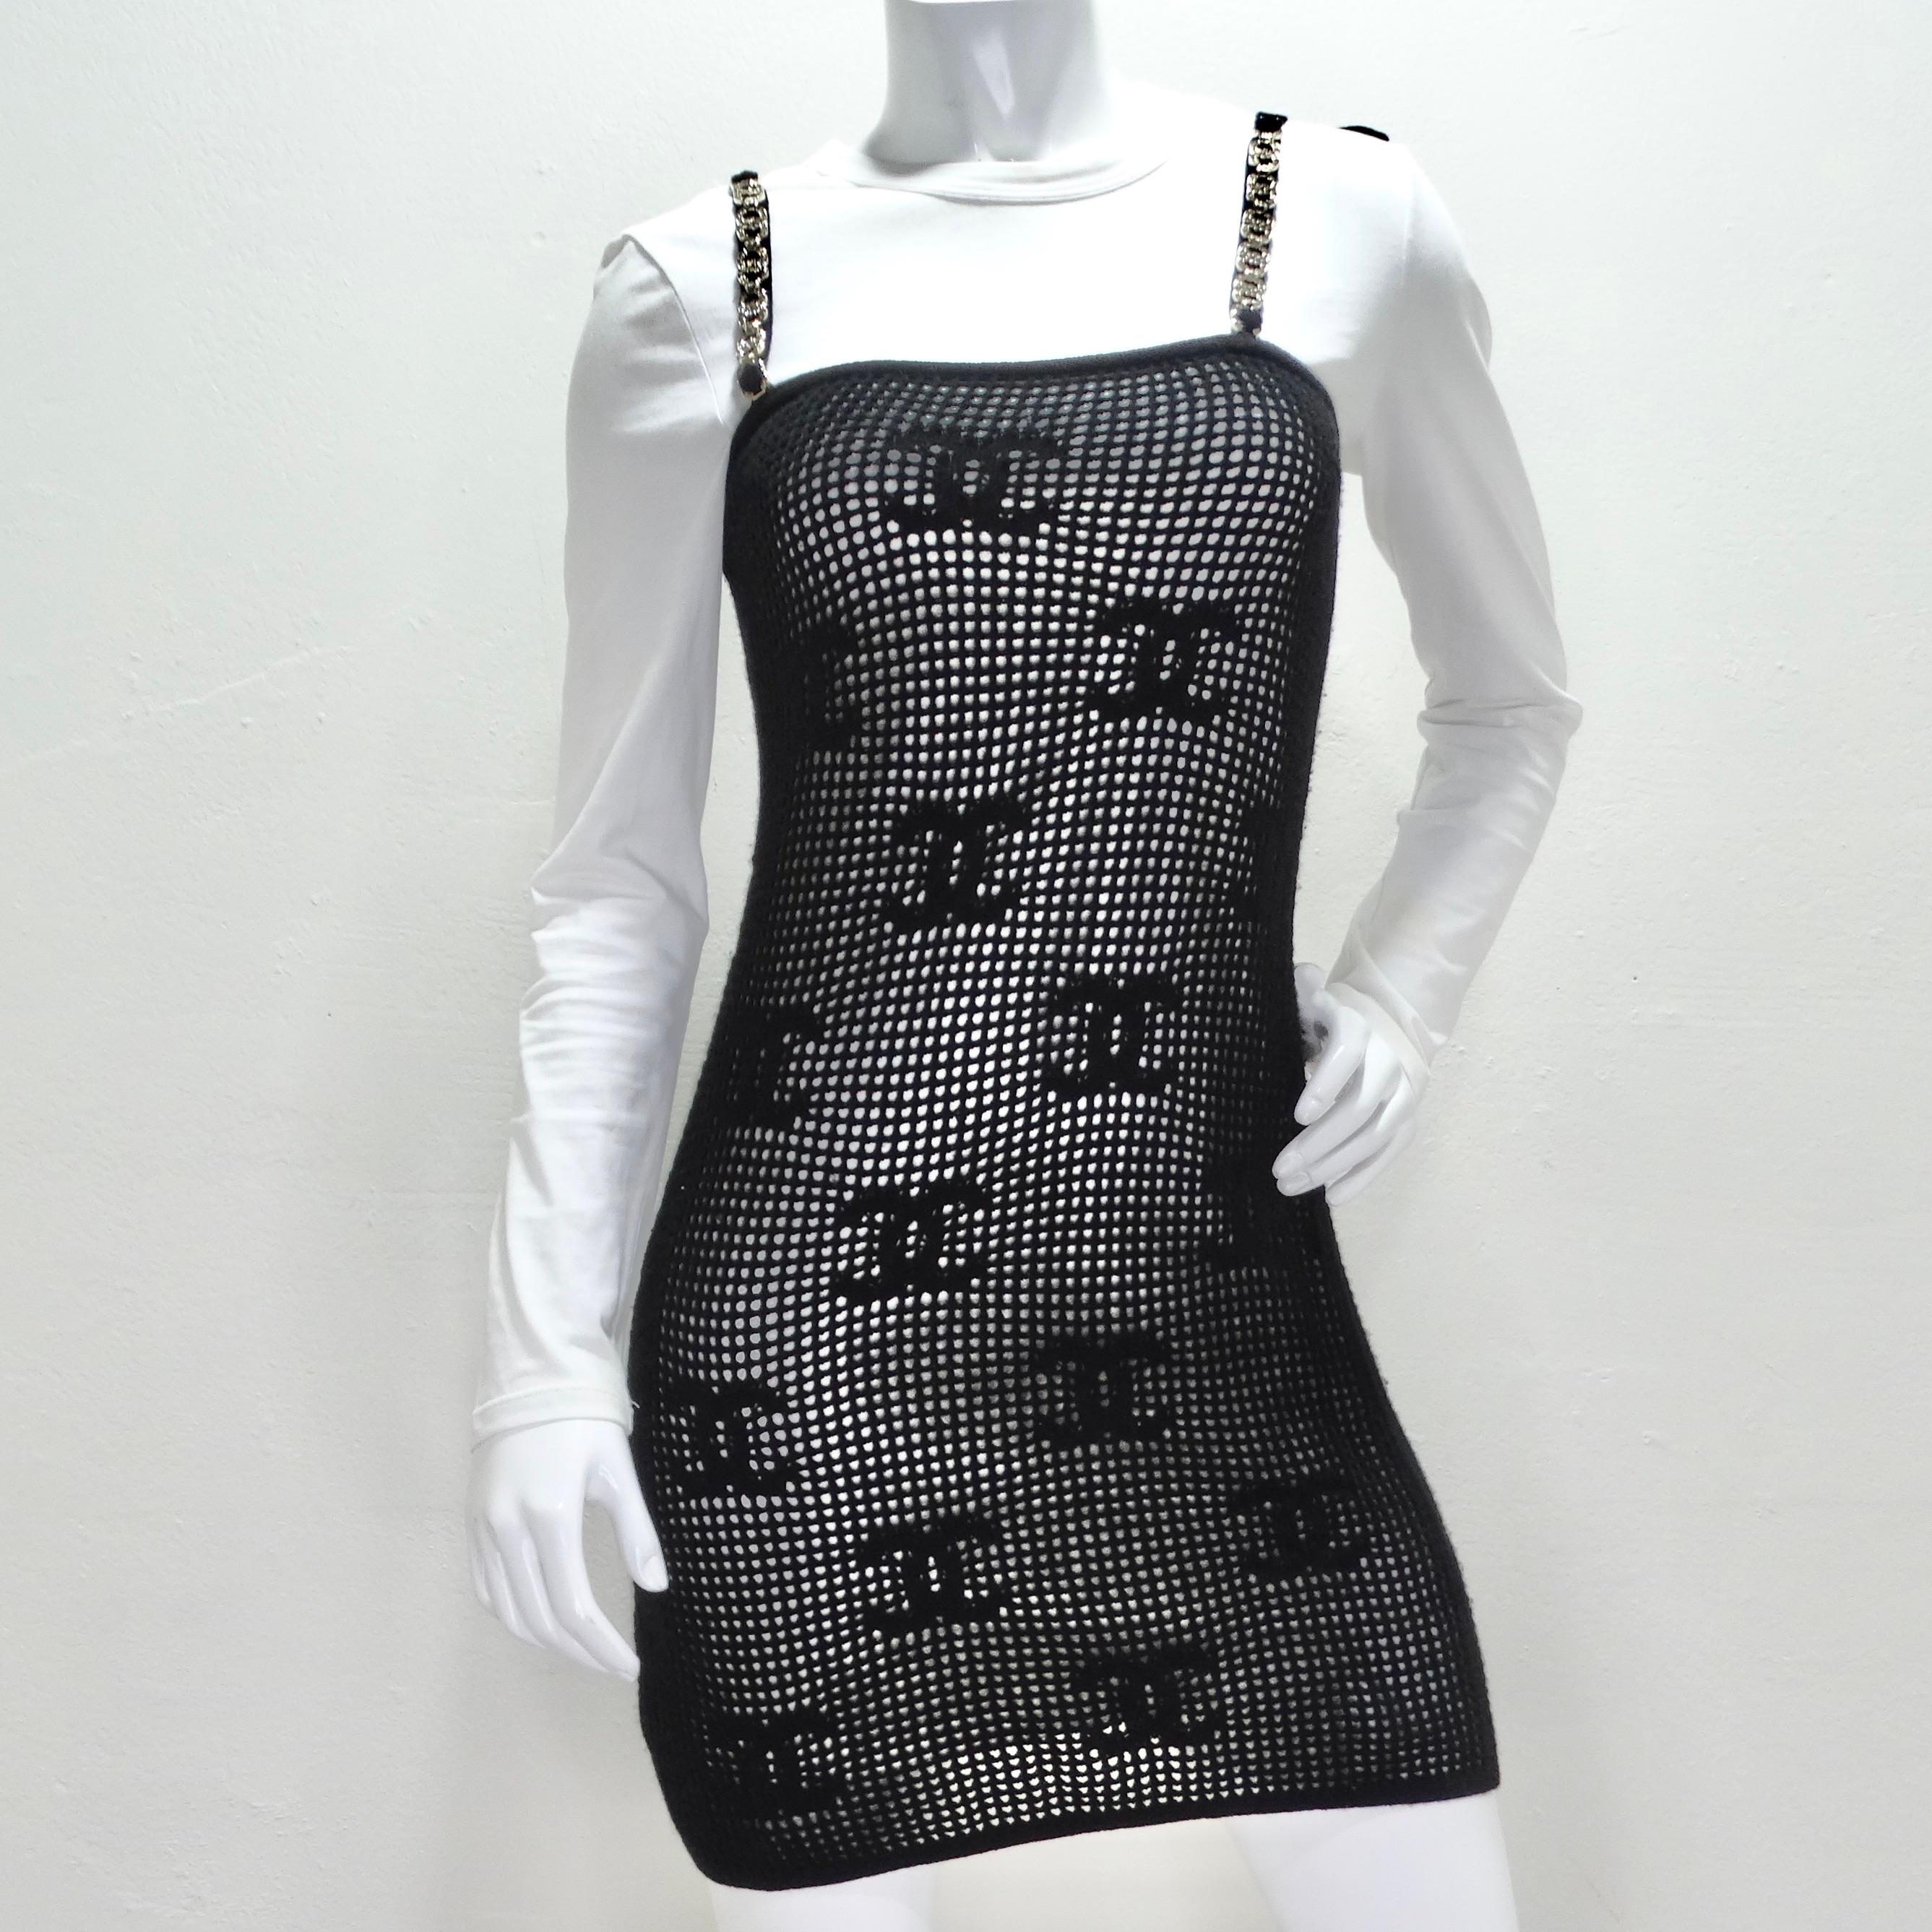 Voici la mini-robe en cachemire noir de Chanel Cruise 2022, une pièce d'exception qui allie harmonieusement le confort luxueux et le style emblématique de Chanel. Cette mini robe n'est pas seulement un vêtement, c'est un chef-d'œuvre à porter qui